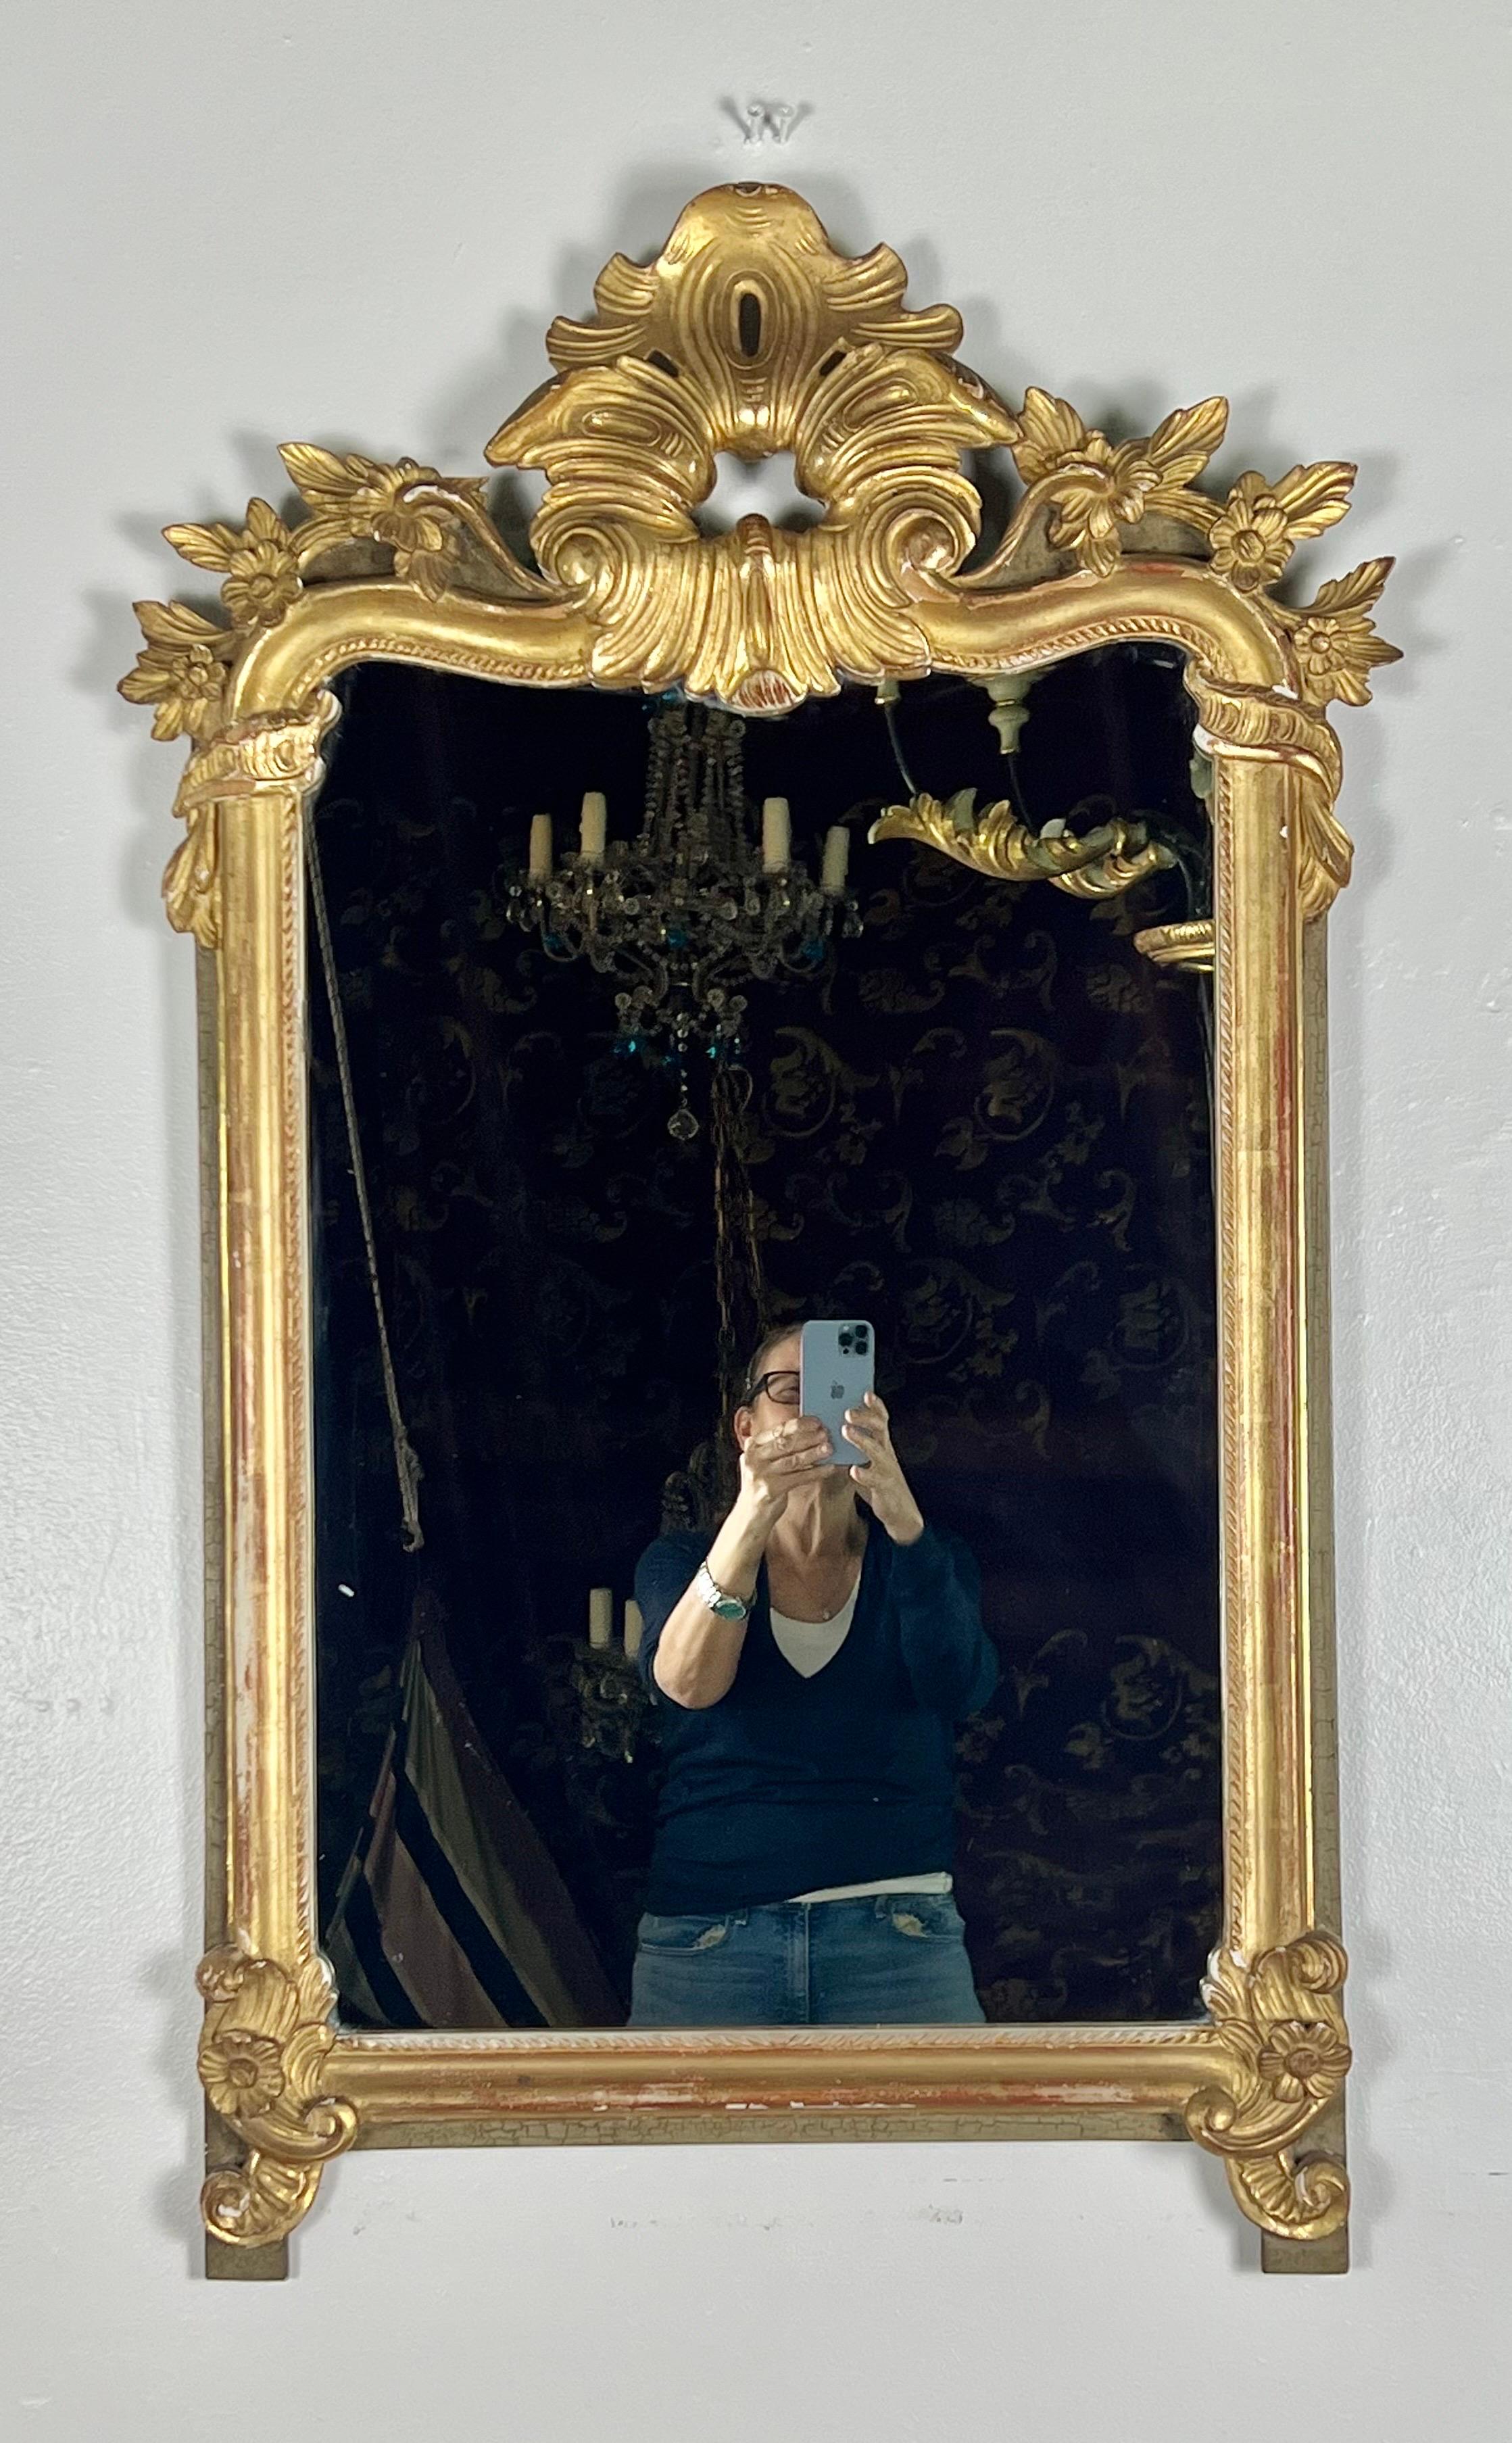 Miroir en bois doré français du 19e siècle.  Le miroir est magnifiquement sculpté de minuscules fleurs encadrant un motif central inspiré d'une feuille d'acanthe.  Le miroir est fini en feuille d'or 22K.  Le miroir repose sur des pieds à feuilles